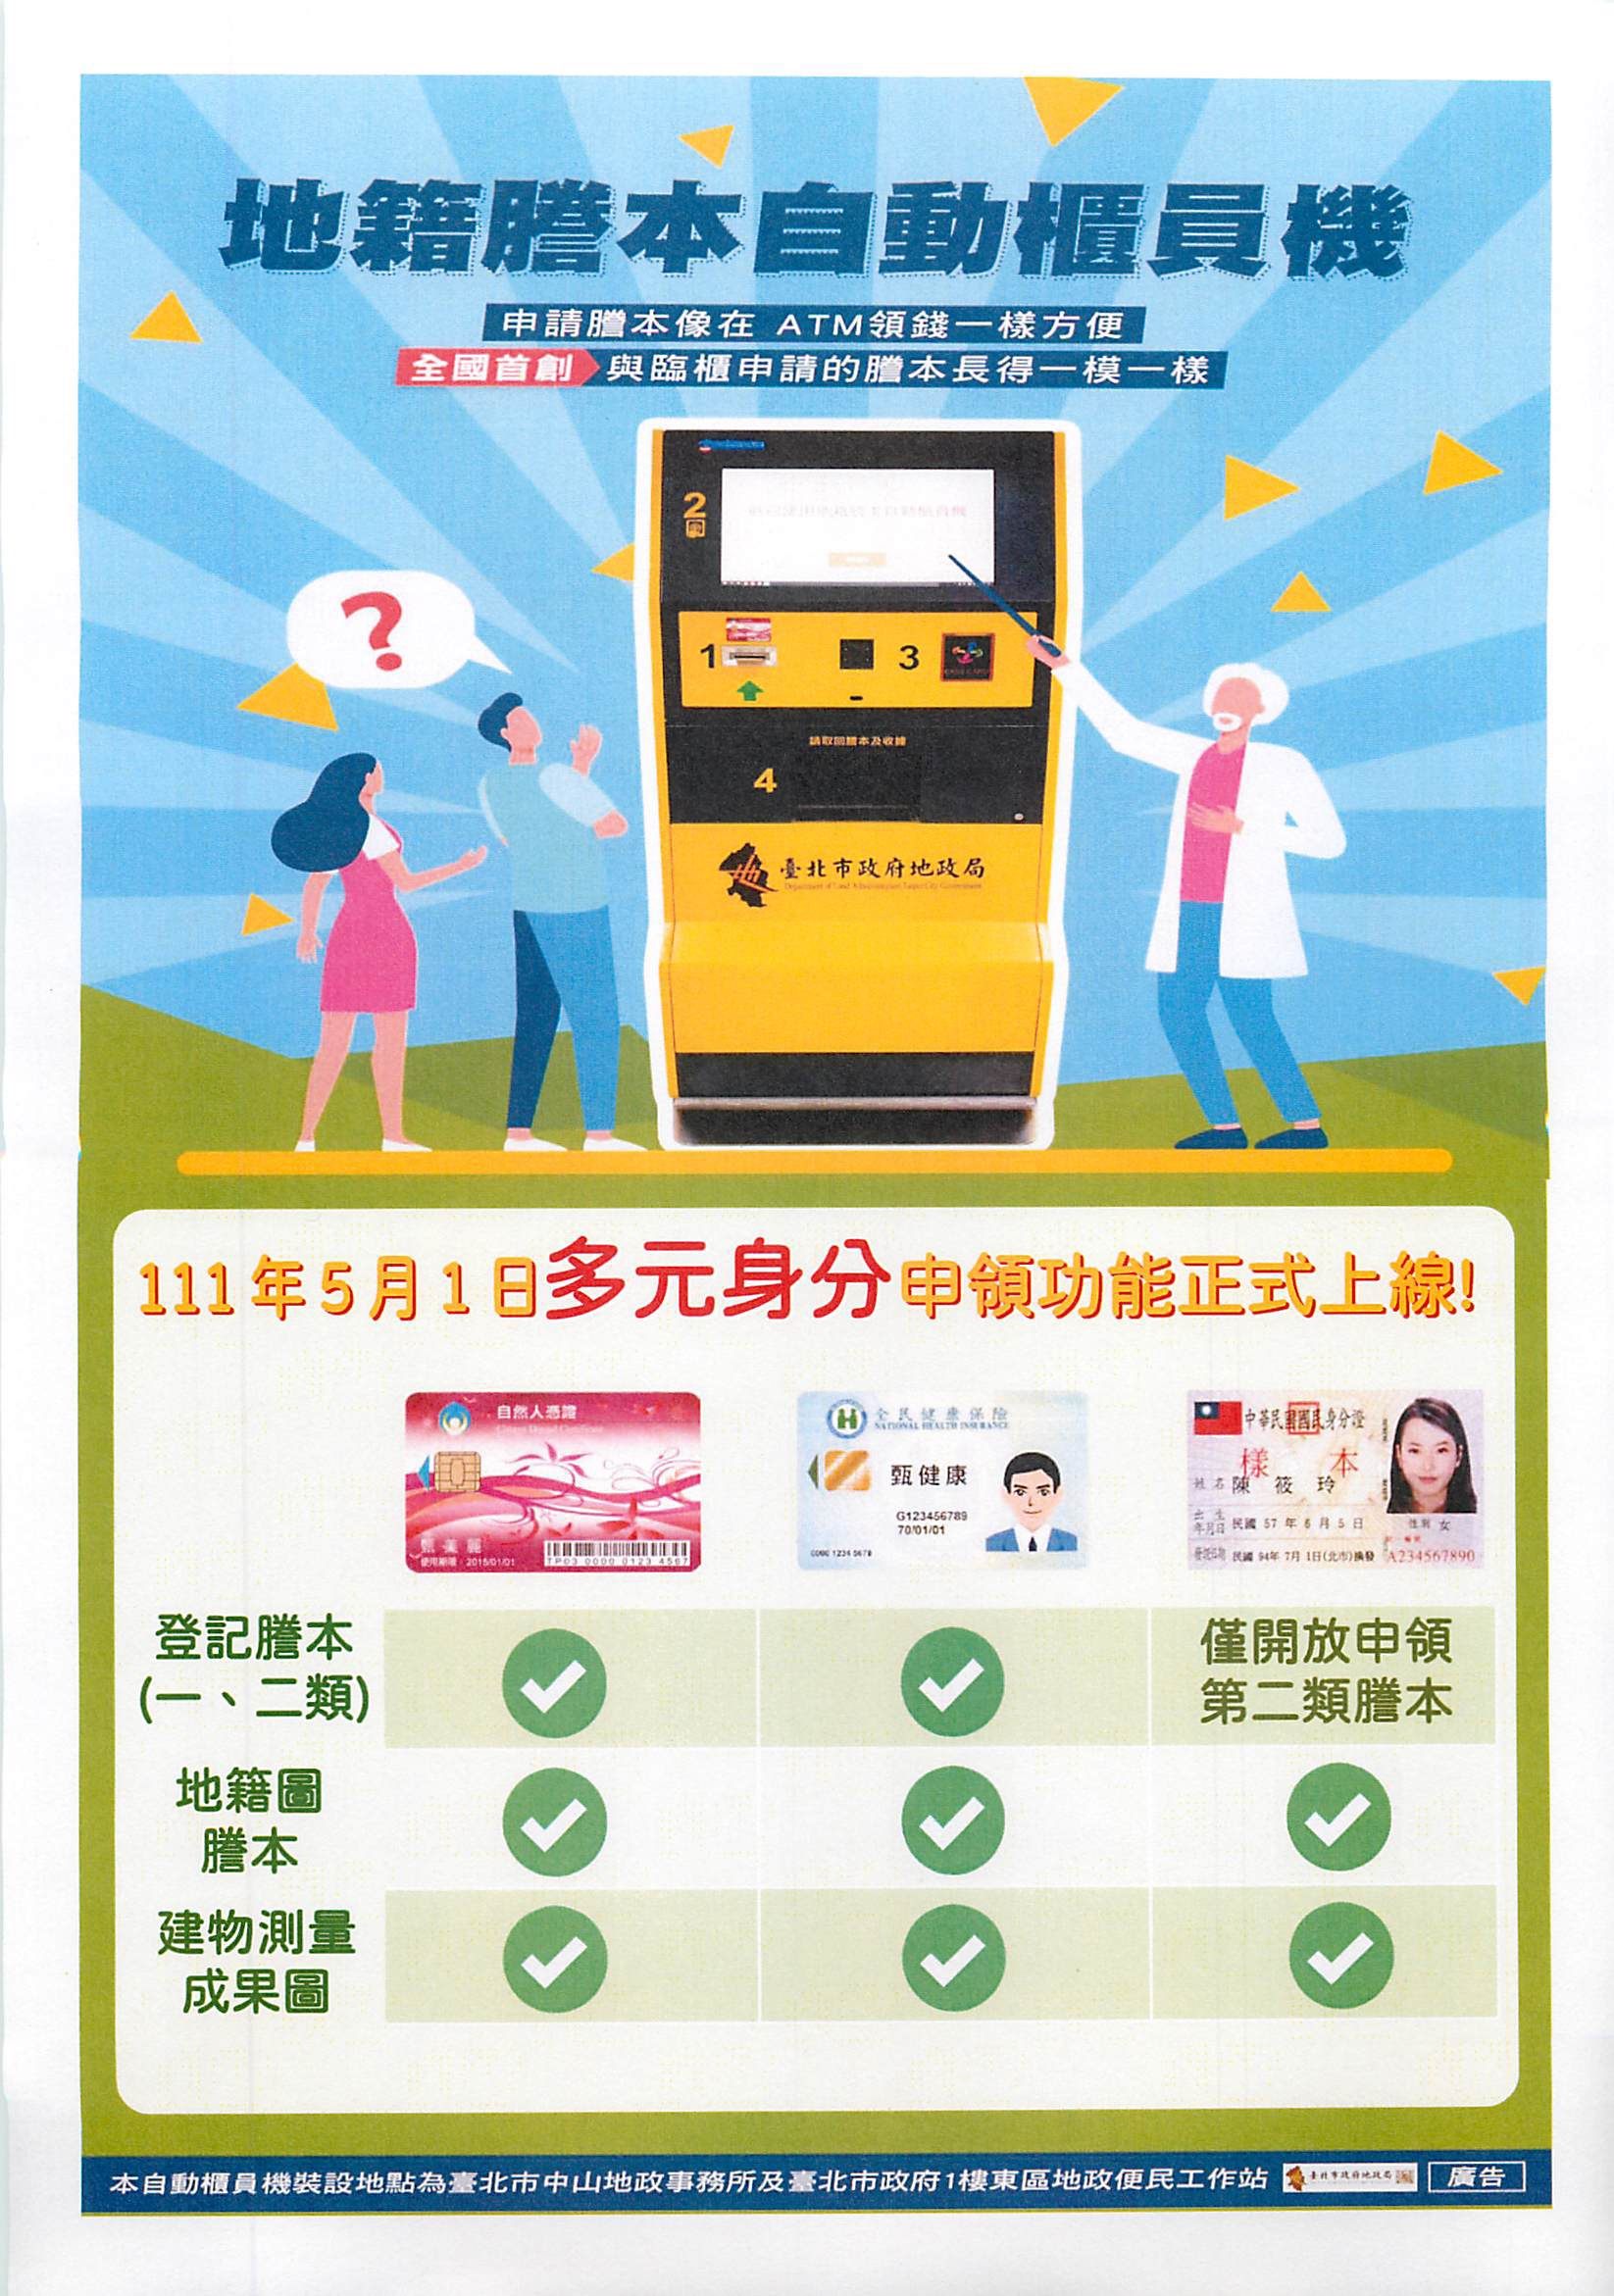 臺北市地籍謄本自動櫃員機提供多元身分申領服務